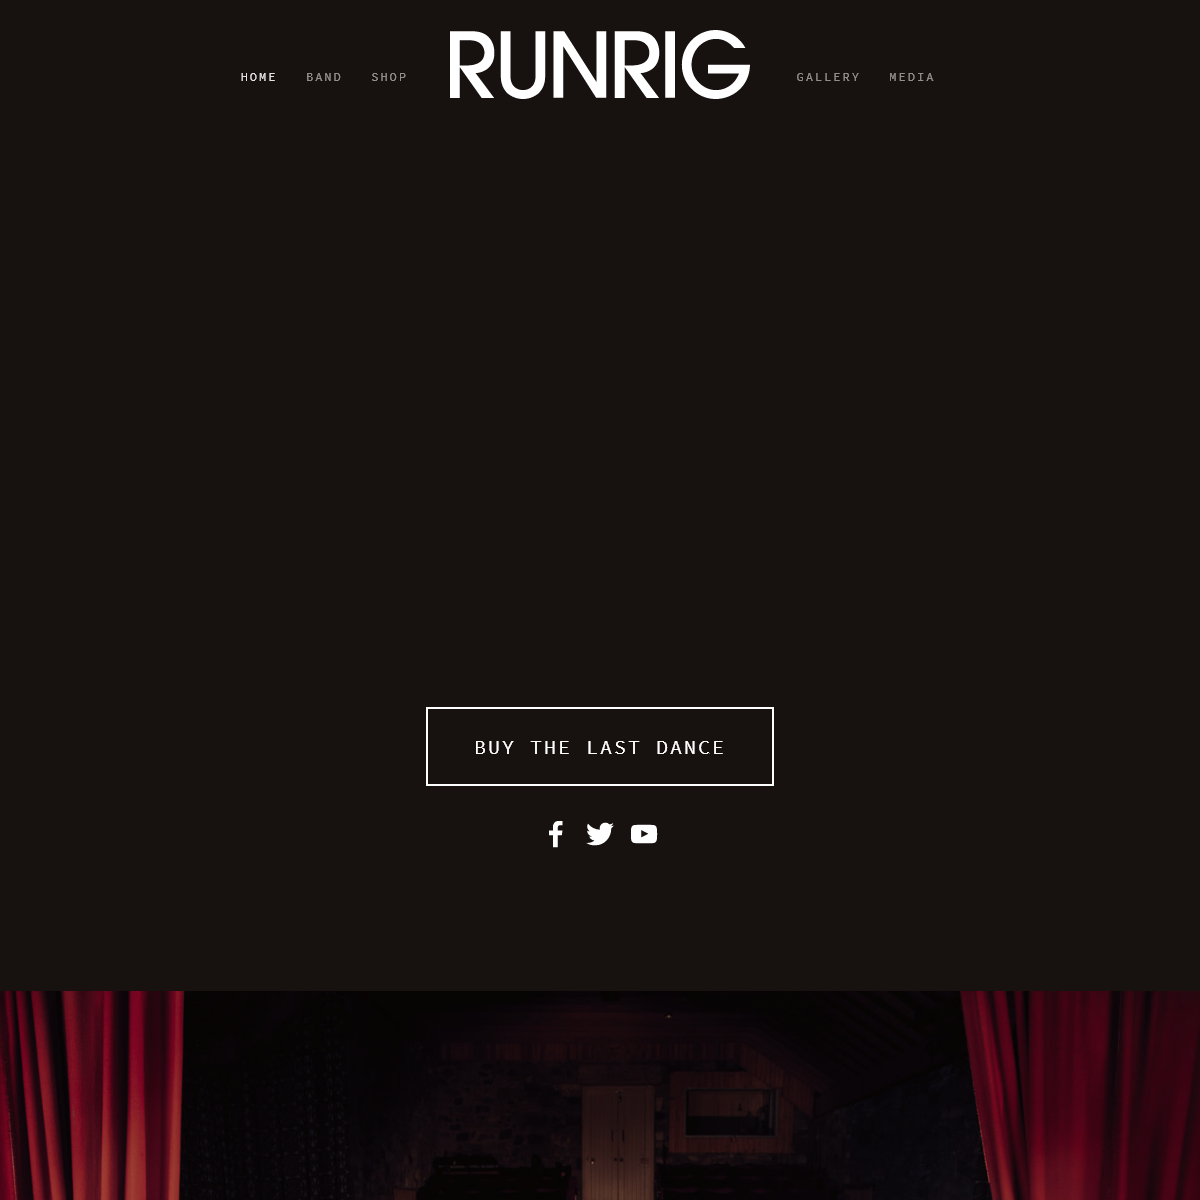 A complete backup of runrig.co.uk